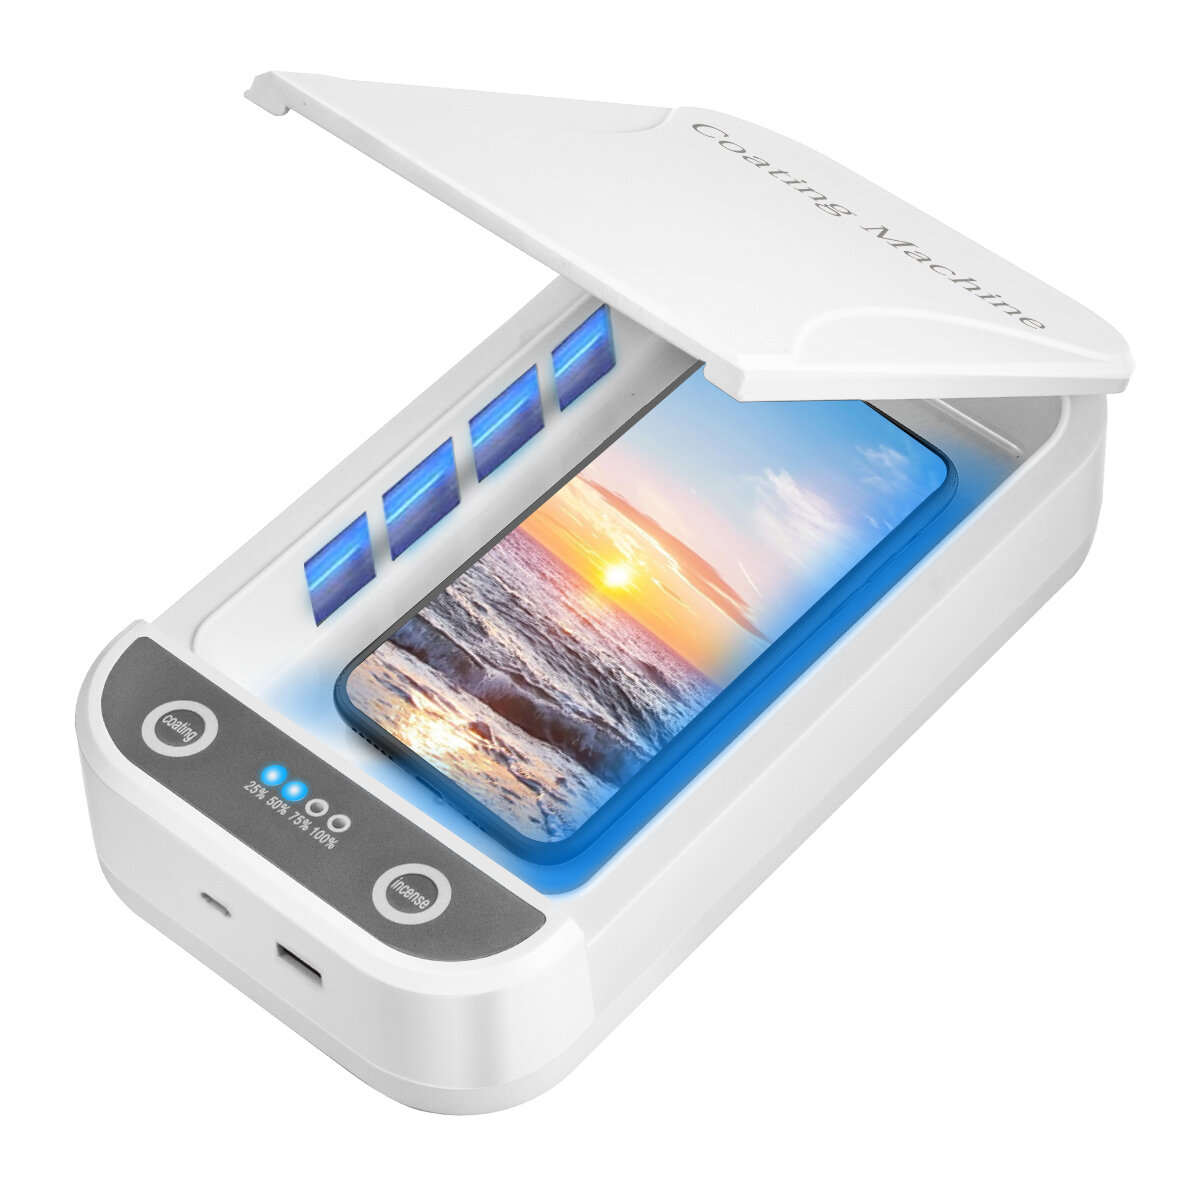 Reinigingsdoos voor mobiele telefoons, MECO Smart Phone Cleaner-apparaat met aromatherapiefunctie vo